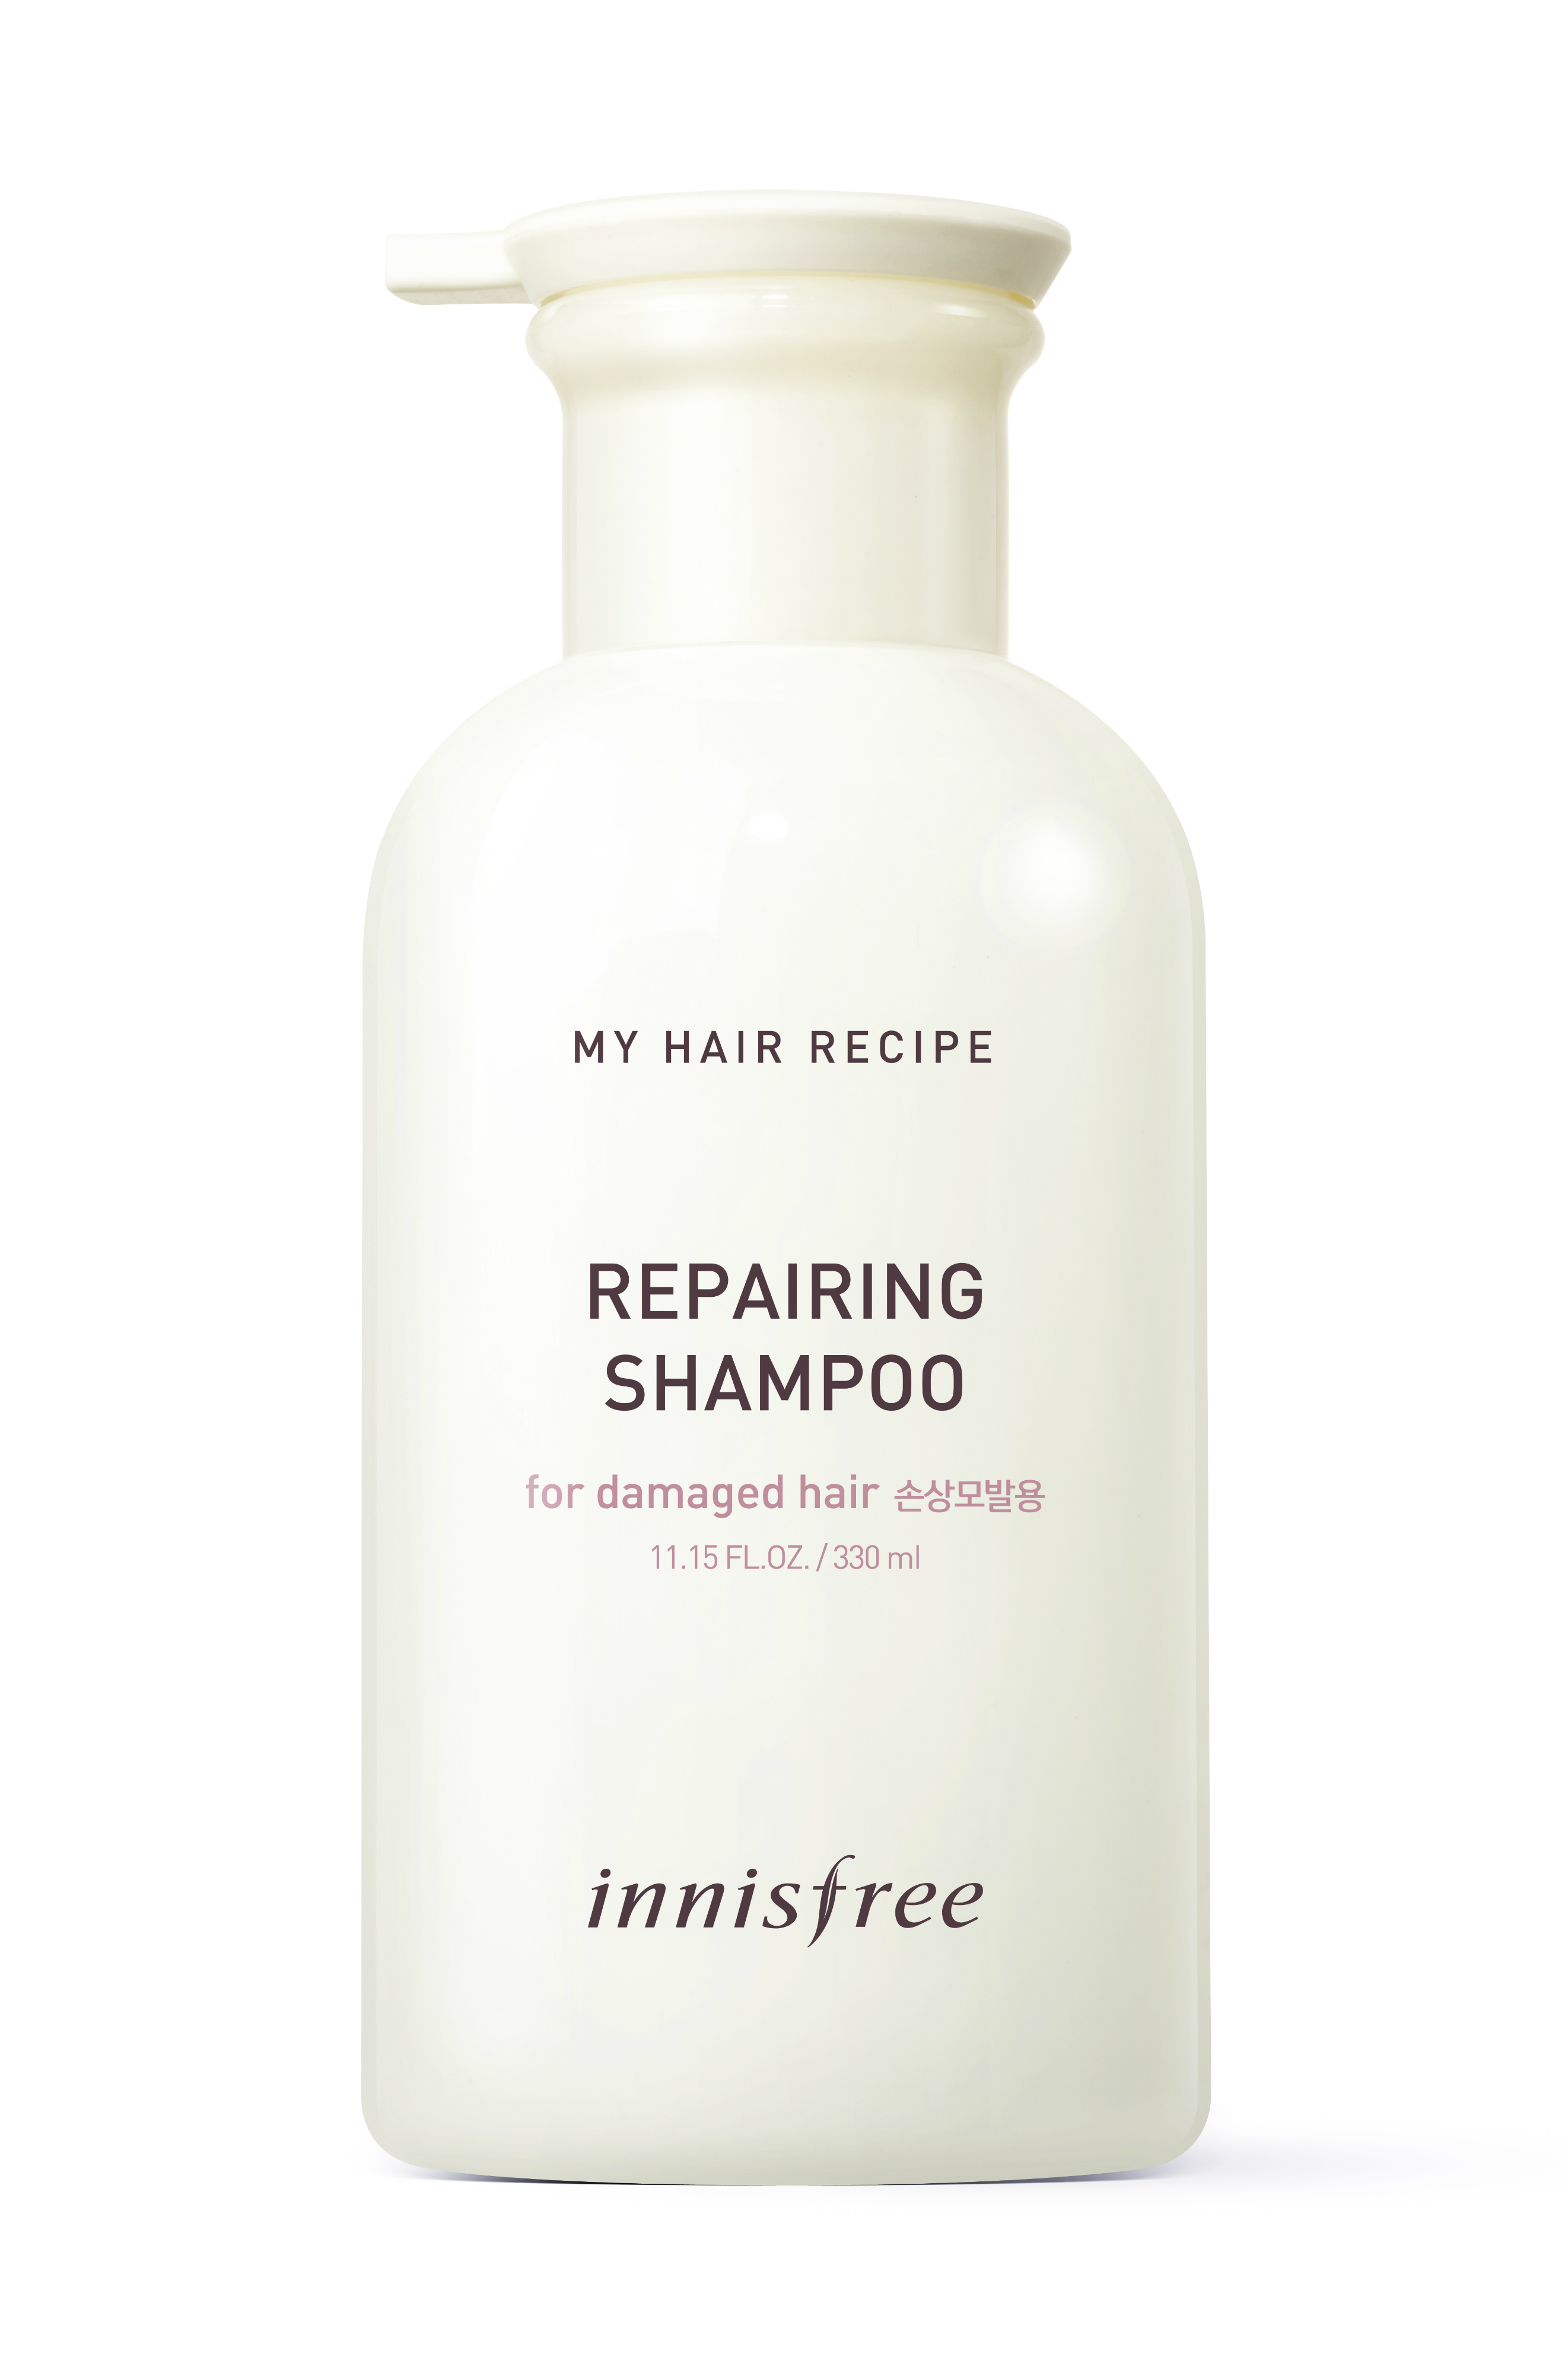 innisfree My Hair Recipe Repairing Shampoo (RM48.00/330ml)-Pamper.my